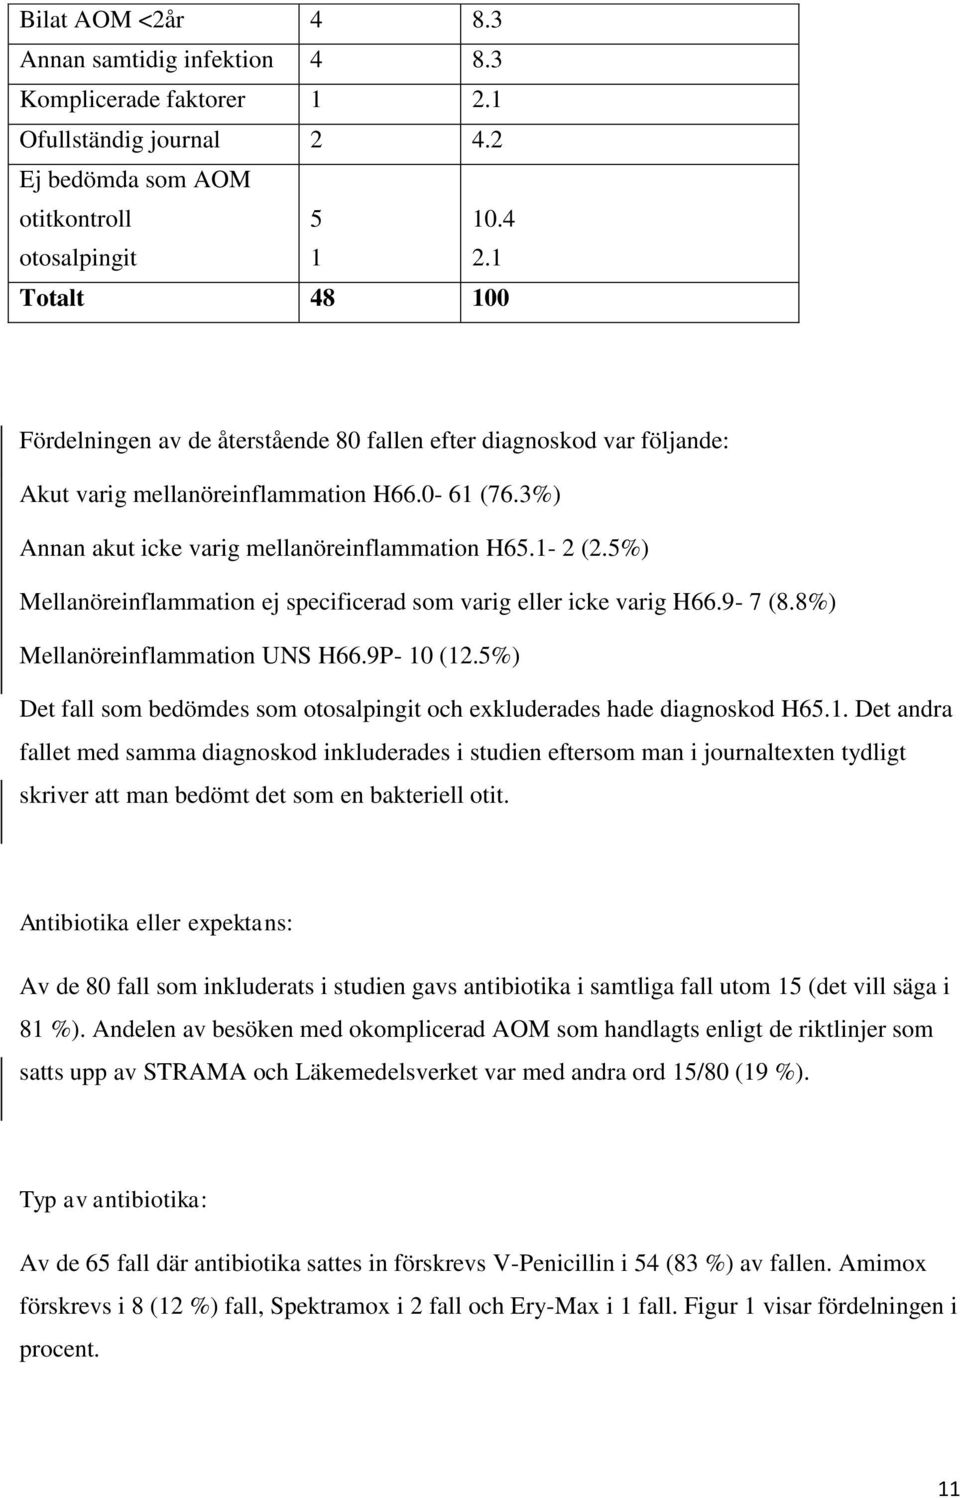 5%) Mellanöreinflammation ej specificerad som varig eller icke varig H66.9-7 (8.8%) Mellanöreinflammation UNS H66.9P- 10 (12.